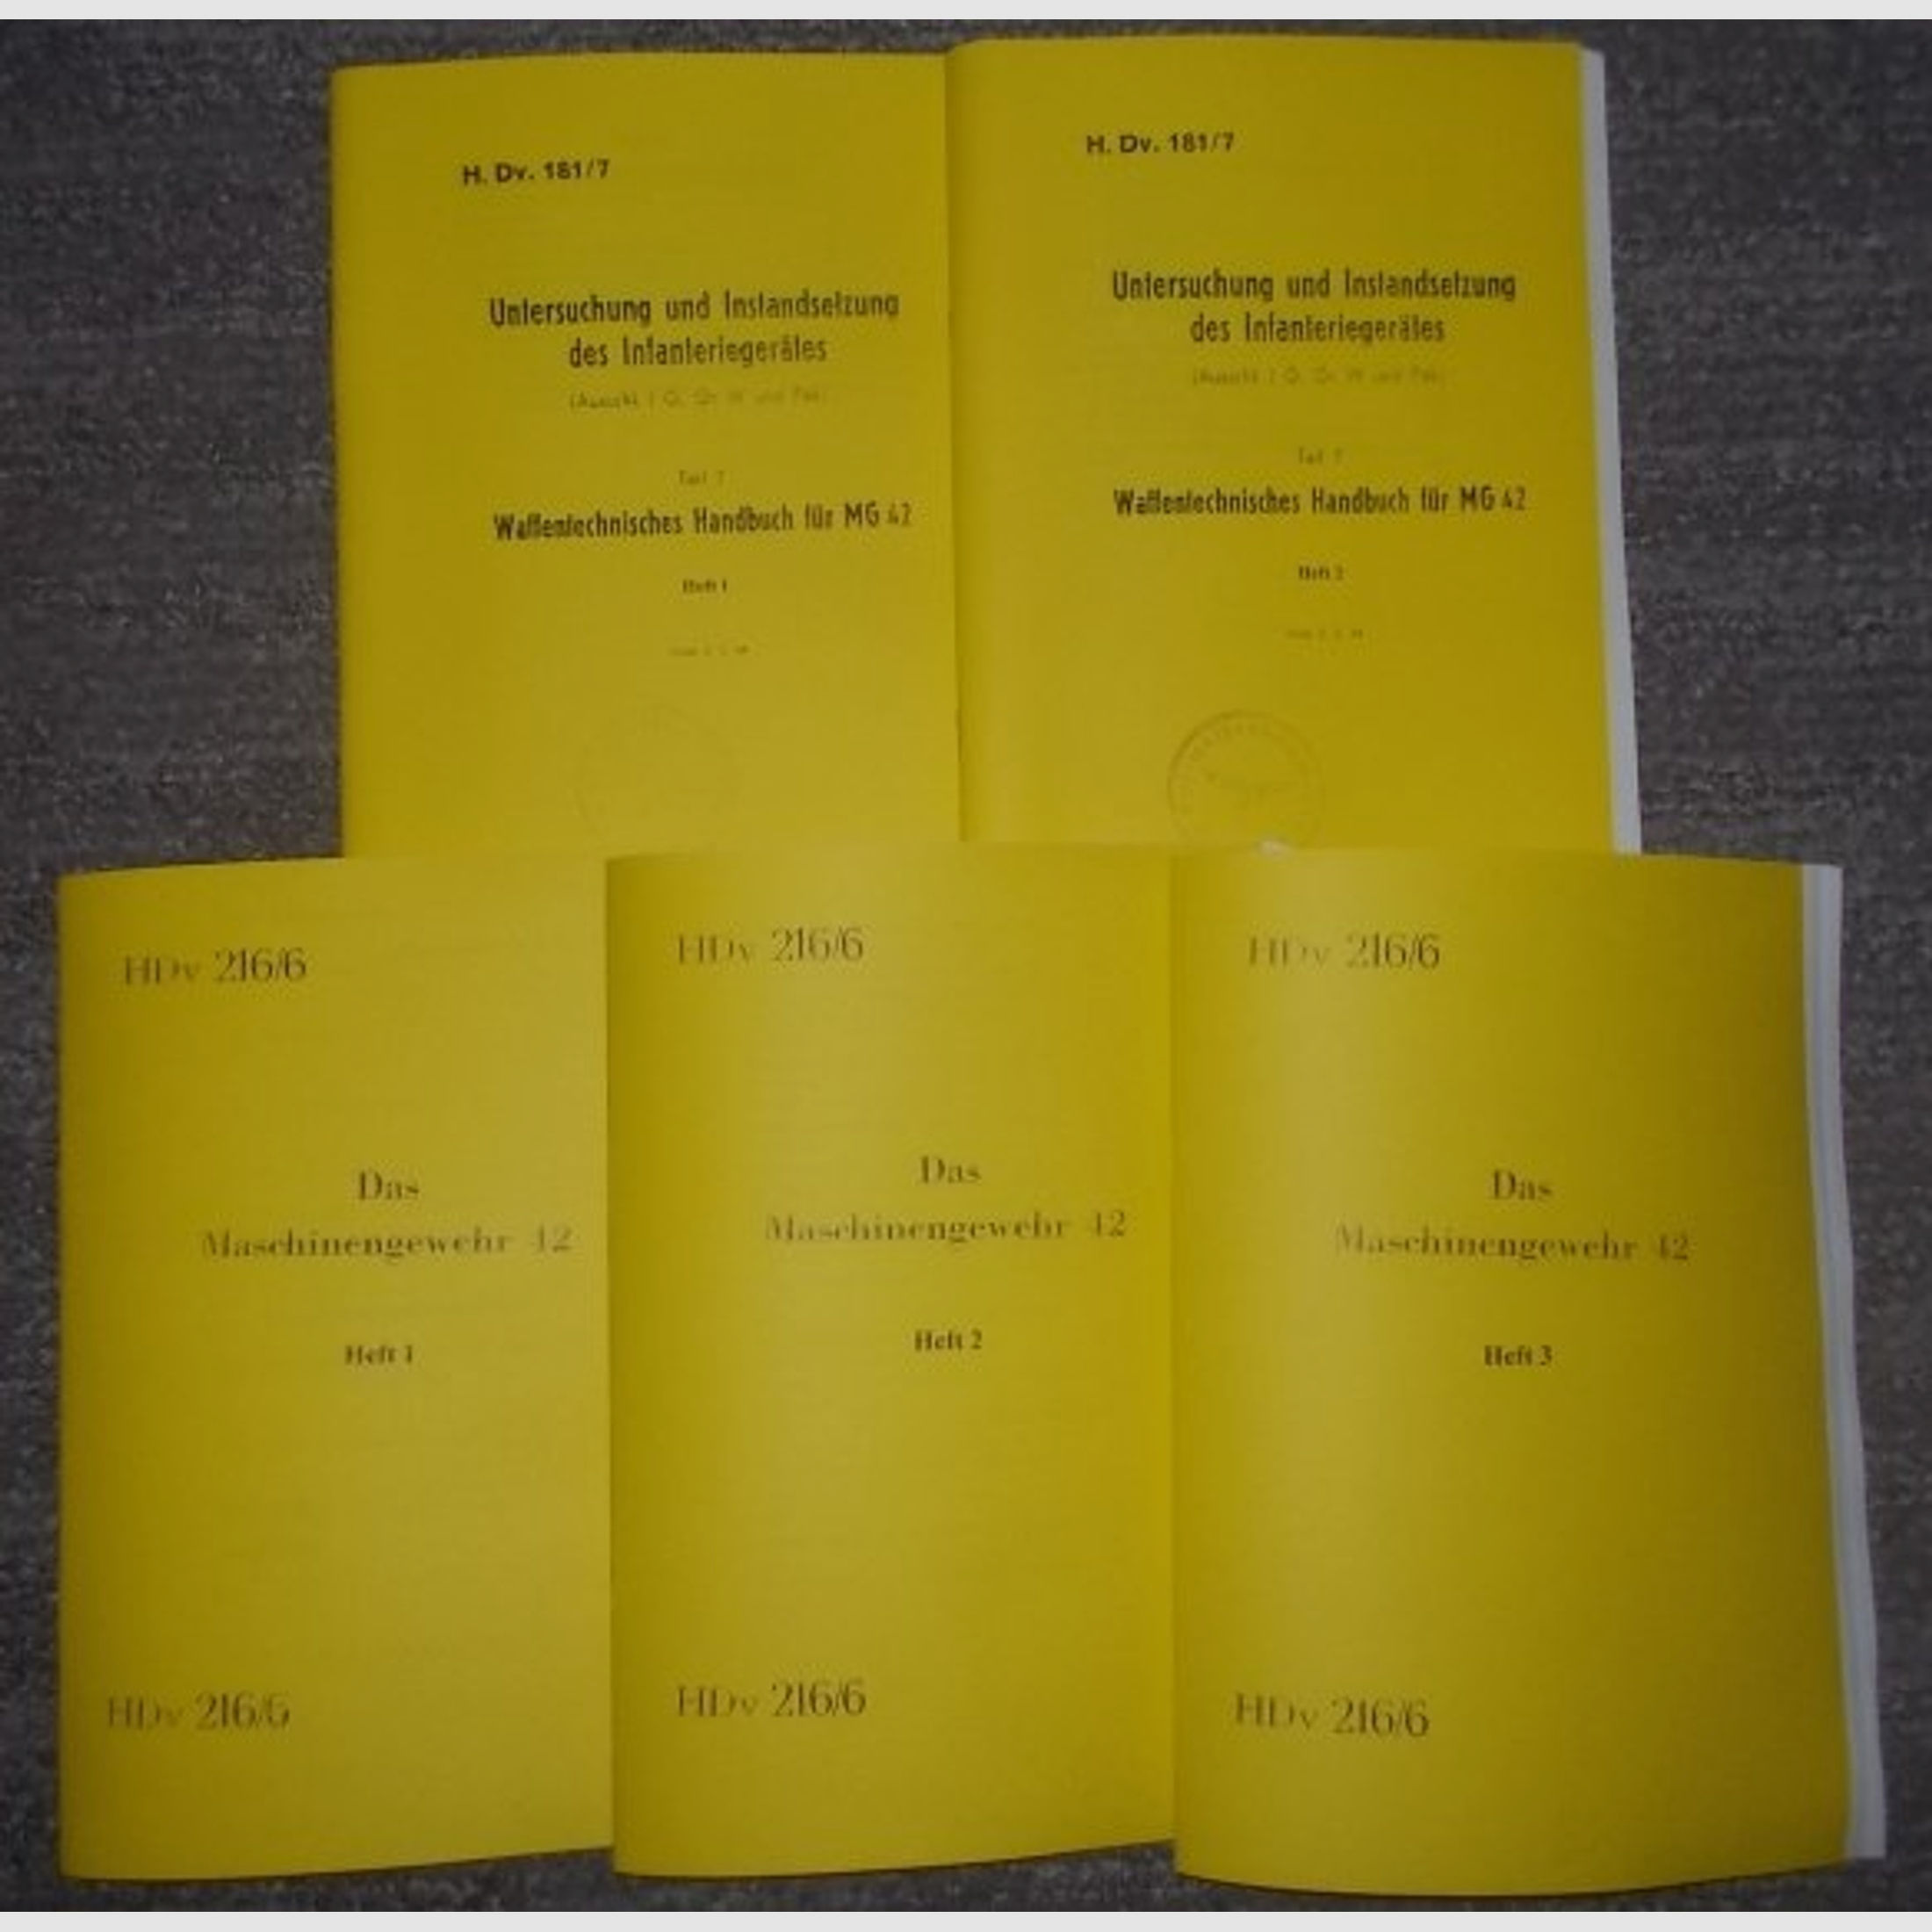 5 Hefte MG42 Beschreibung Dienstanweisung H.Dv.216 & H.Dv.181 Waffentächnisches Hanbuch von 1944